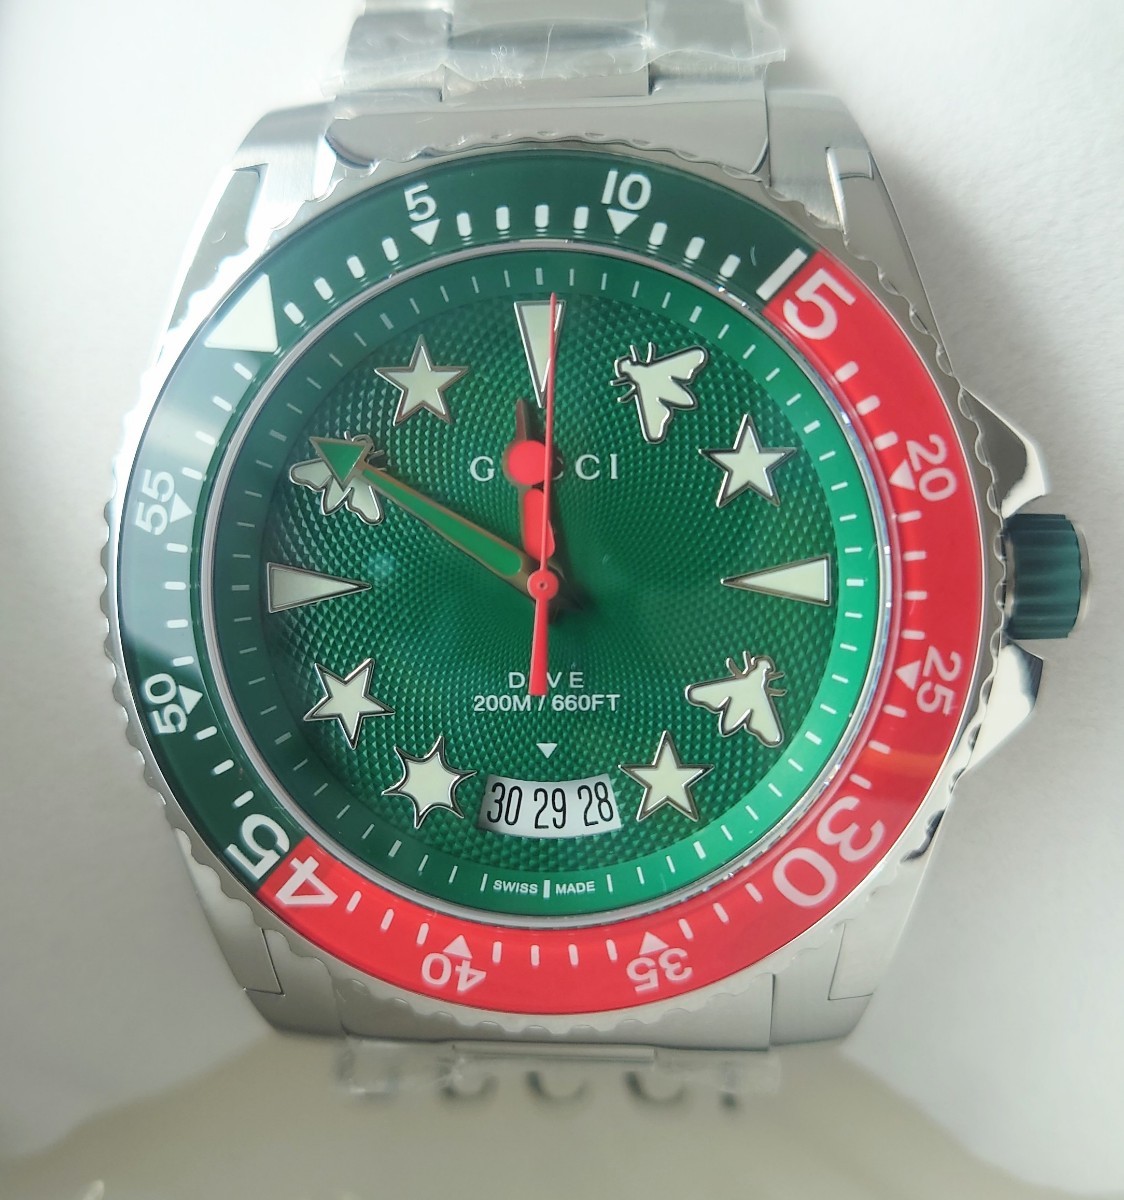 新品未使用 グッチ gucci グリーン 腕時計 YA136222ダイブ メンズ